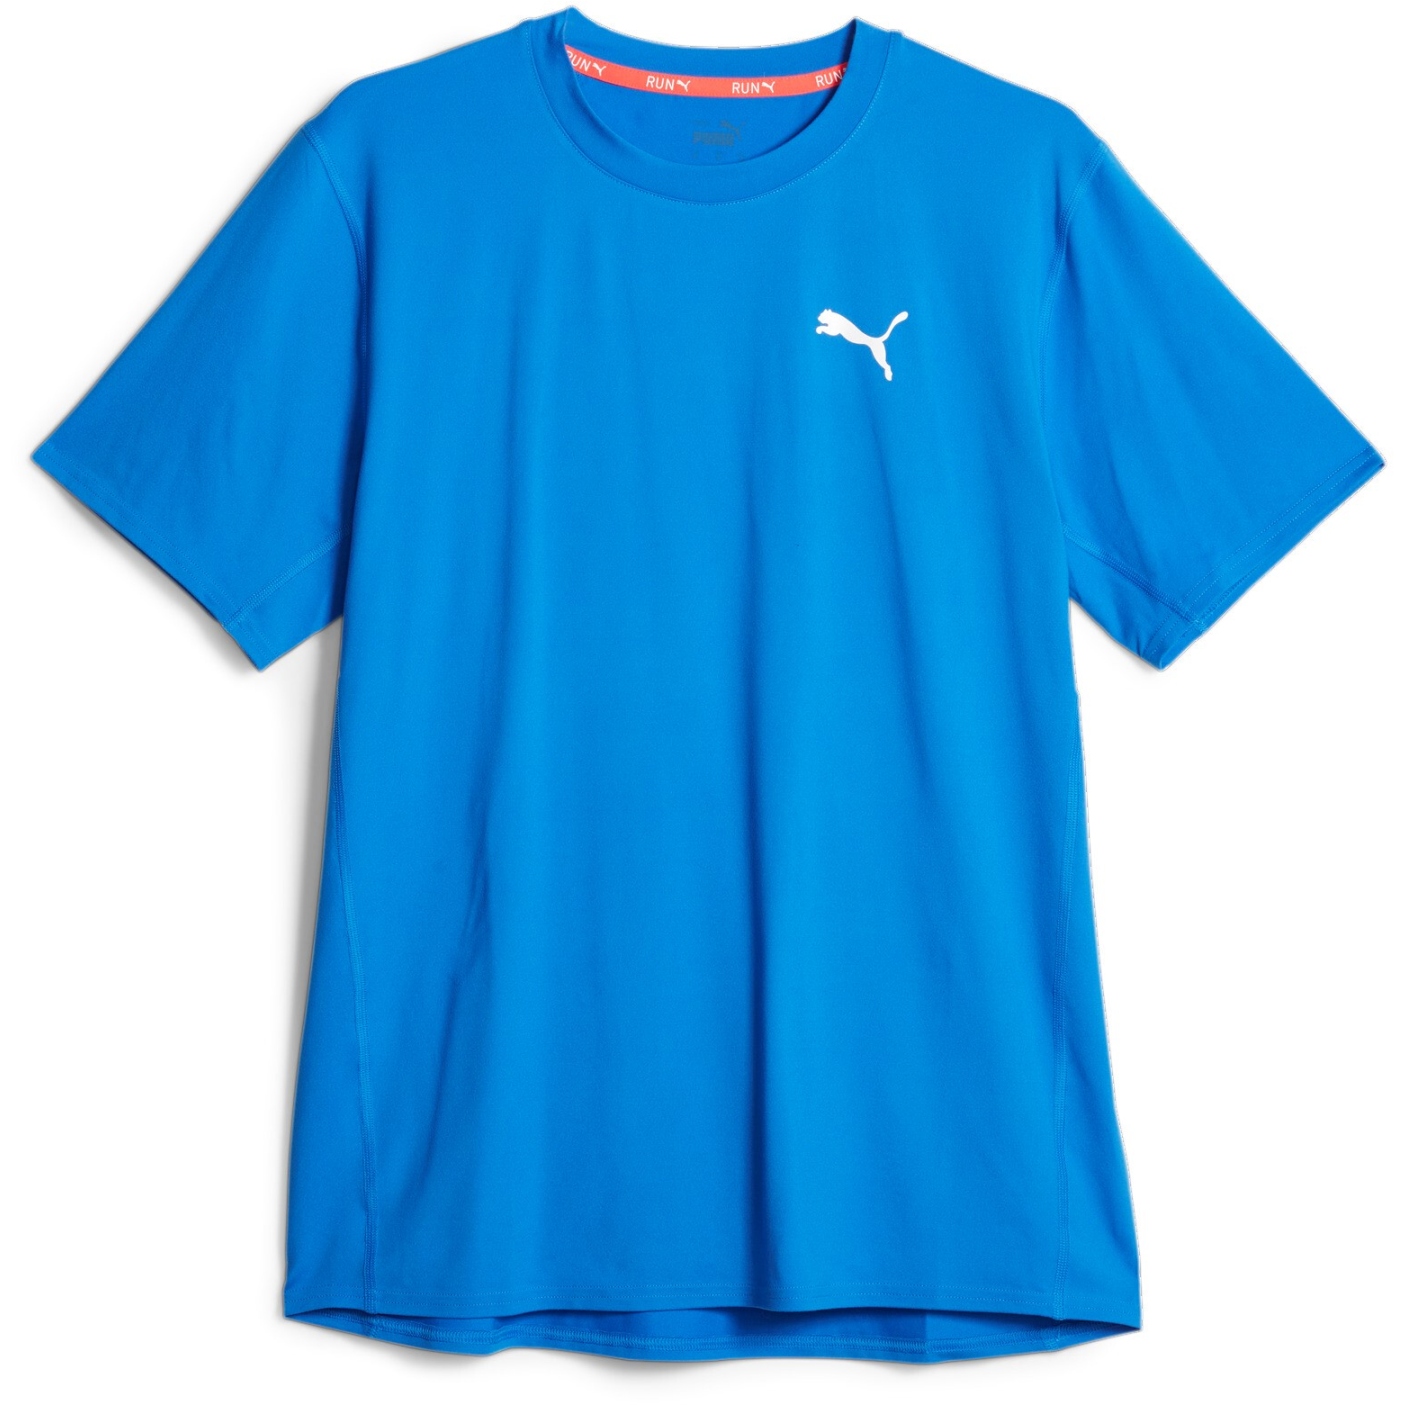 Picture of Puma Cloudspun Running Short Sleeve Tee Men - Ultra Blue